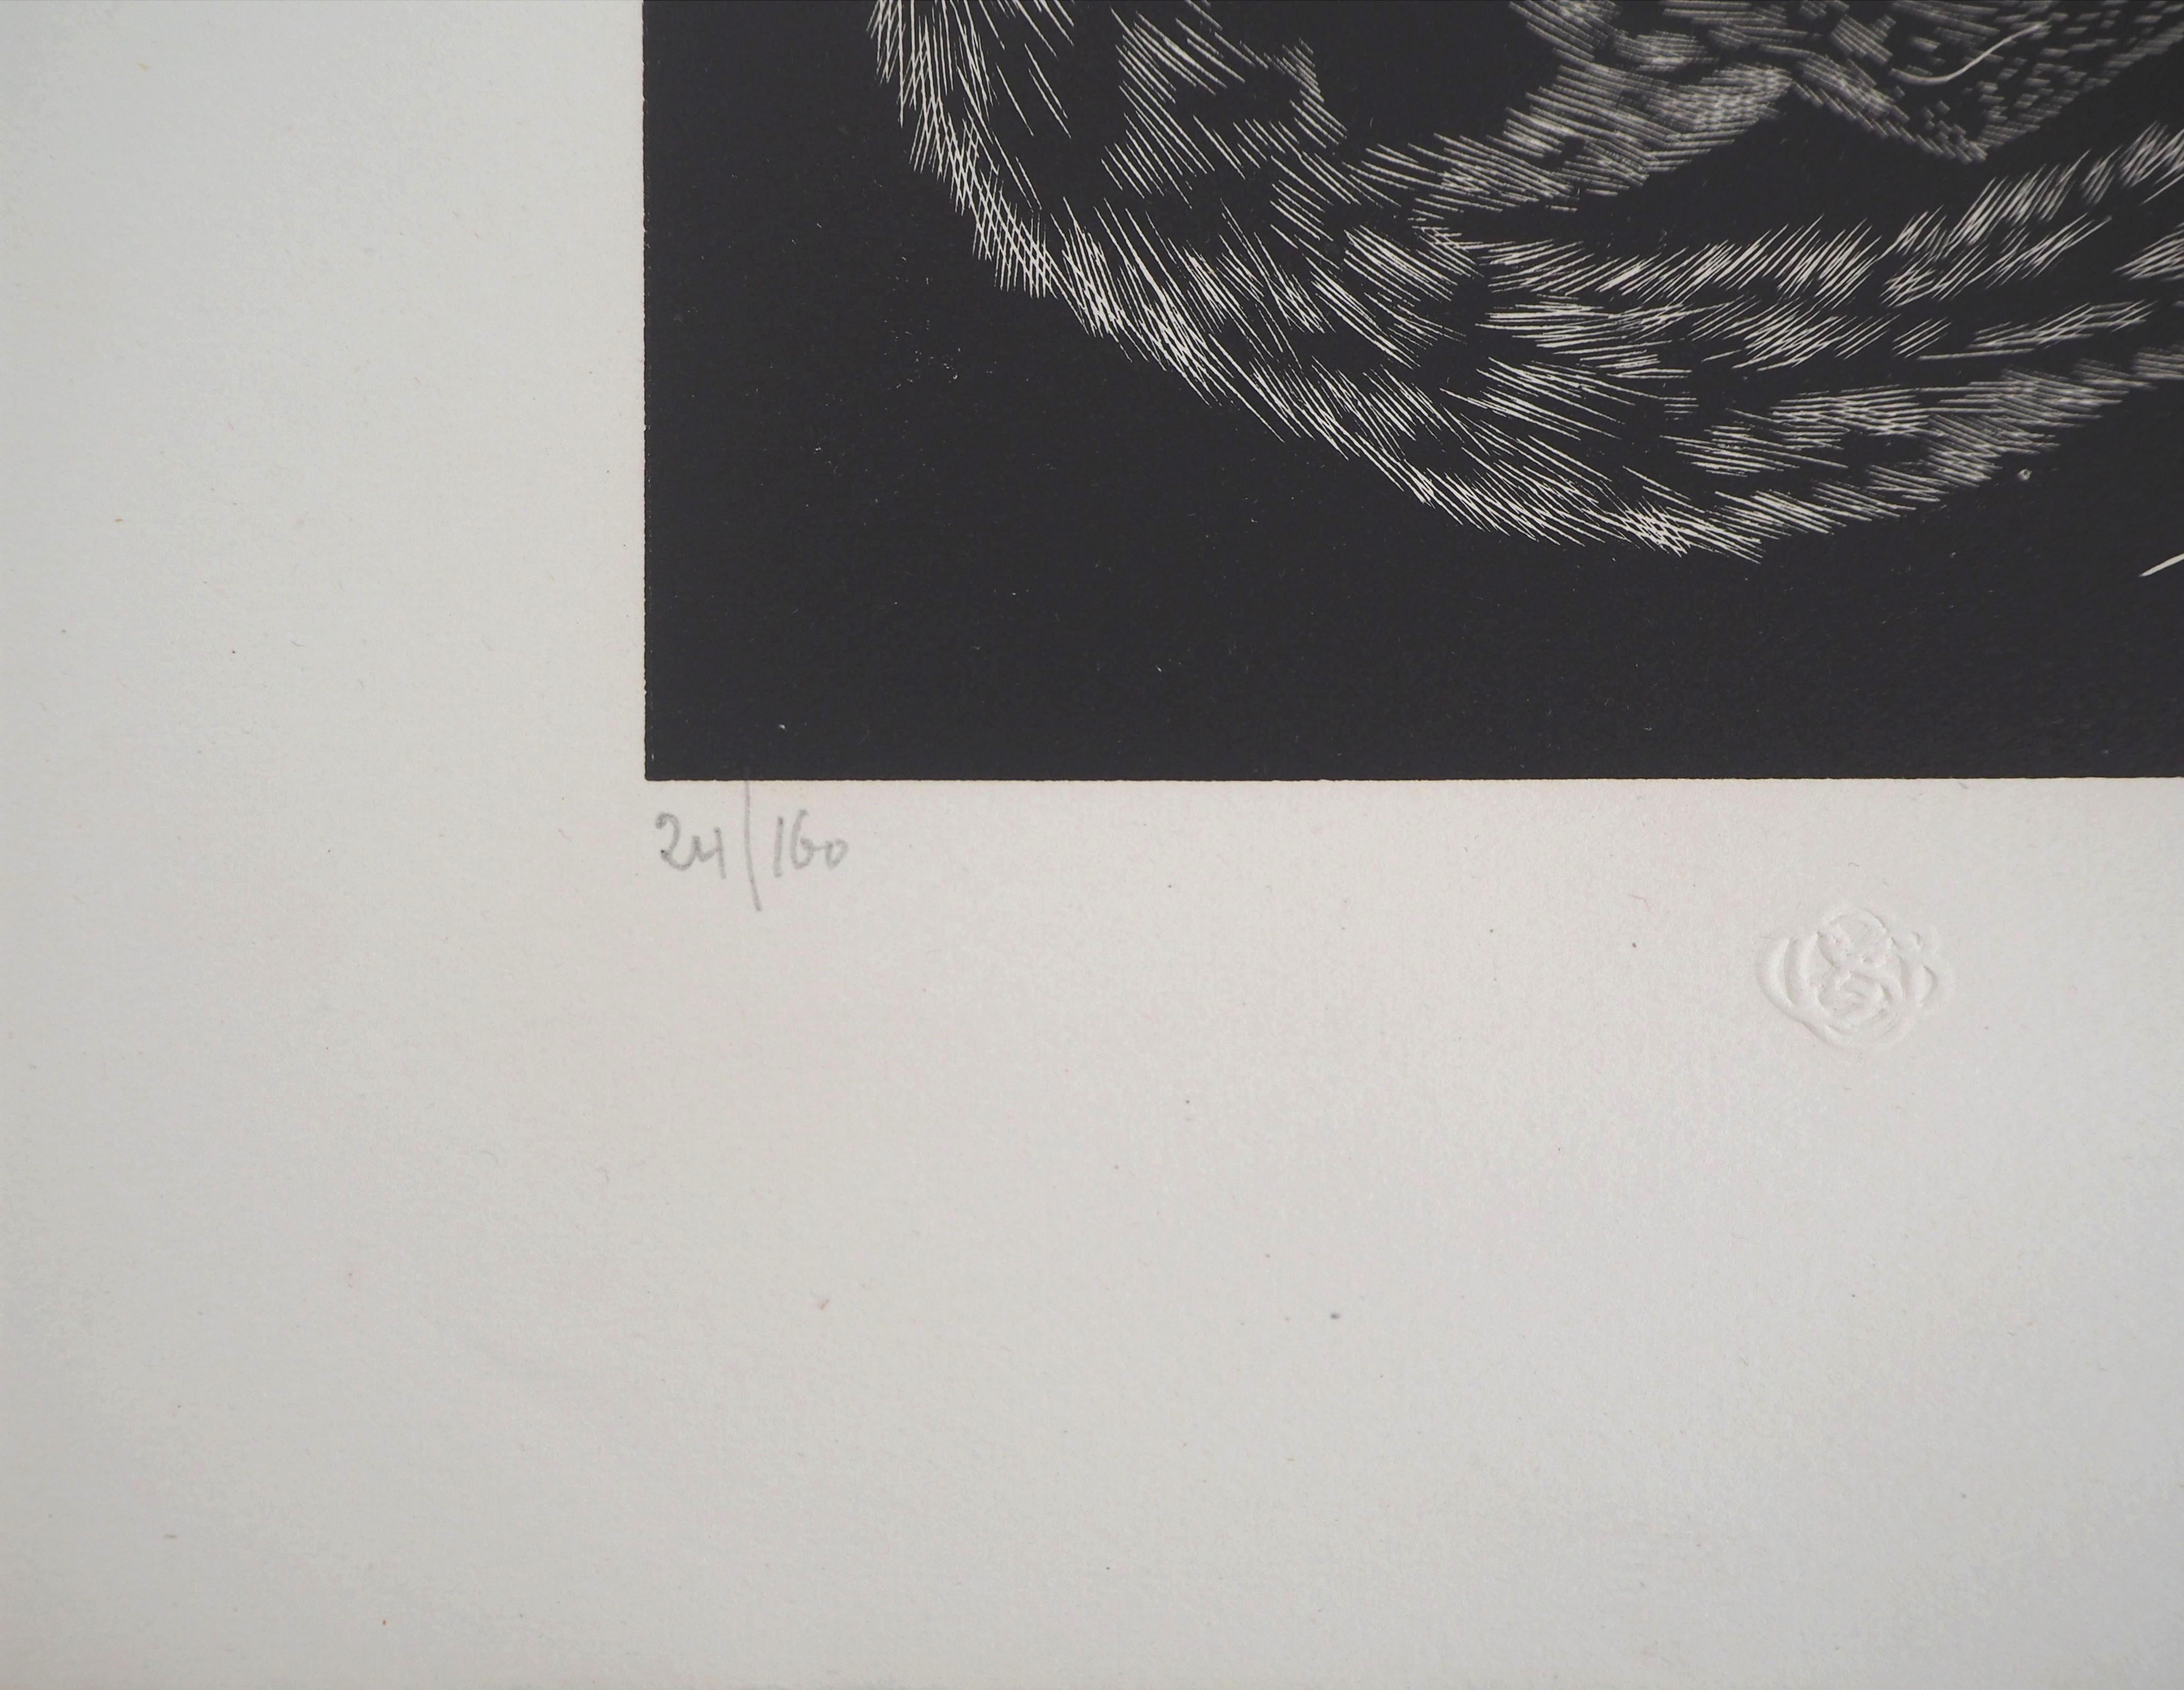 Leonard Tsuguharu FOUJITA
Katze, 1927

Original Holzschnitt
Handsigniert mit Tinte
Nummeriert /160
Trägt den Blindstempel des Herausgebers (Lugt 1140a)
Auf Vellum 32,5 x 25,5 cm (ca. 13 x 10 inch)

REFERENZEN : Gesamtkatalog : Buisson